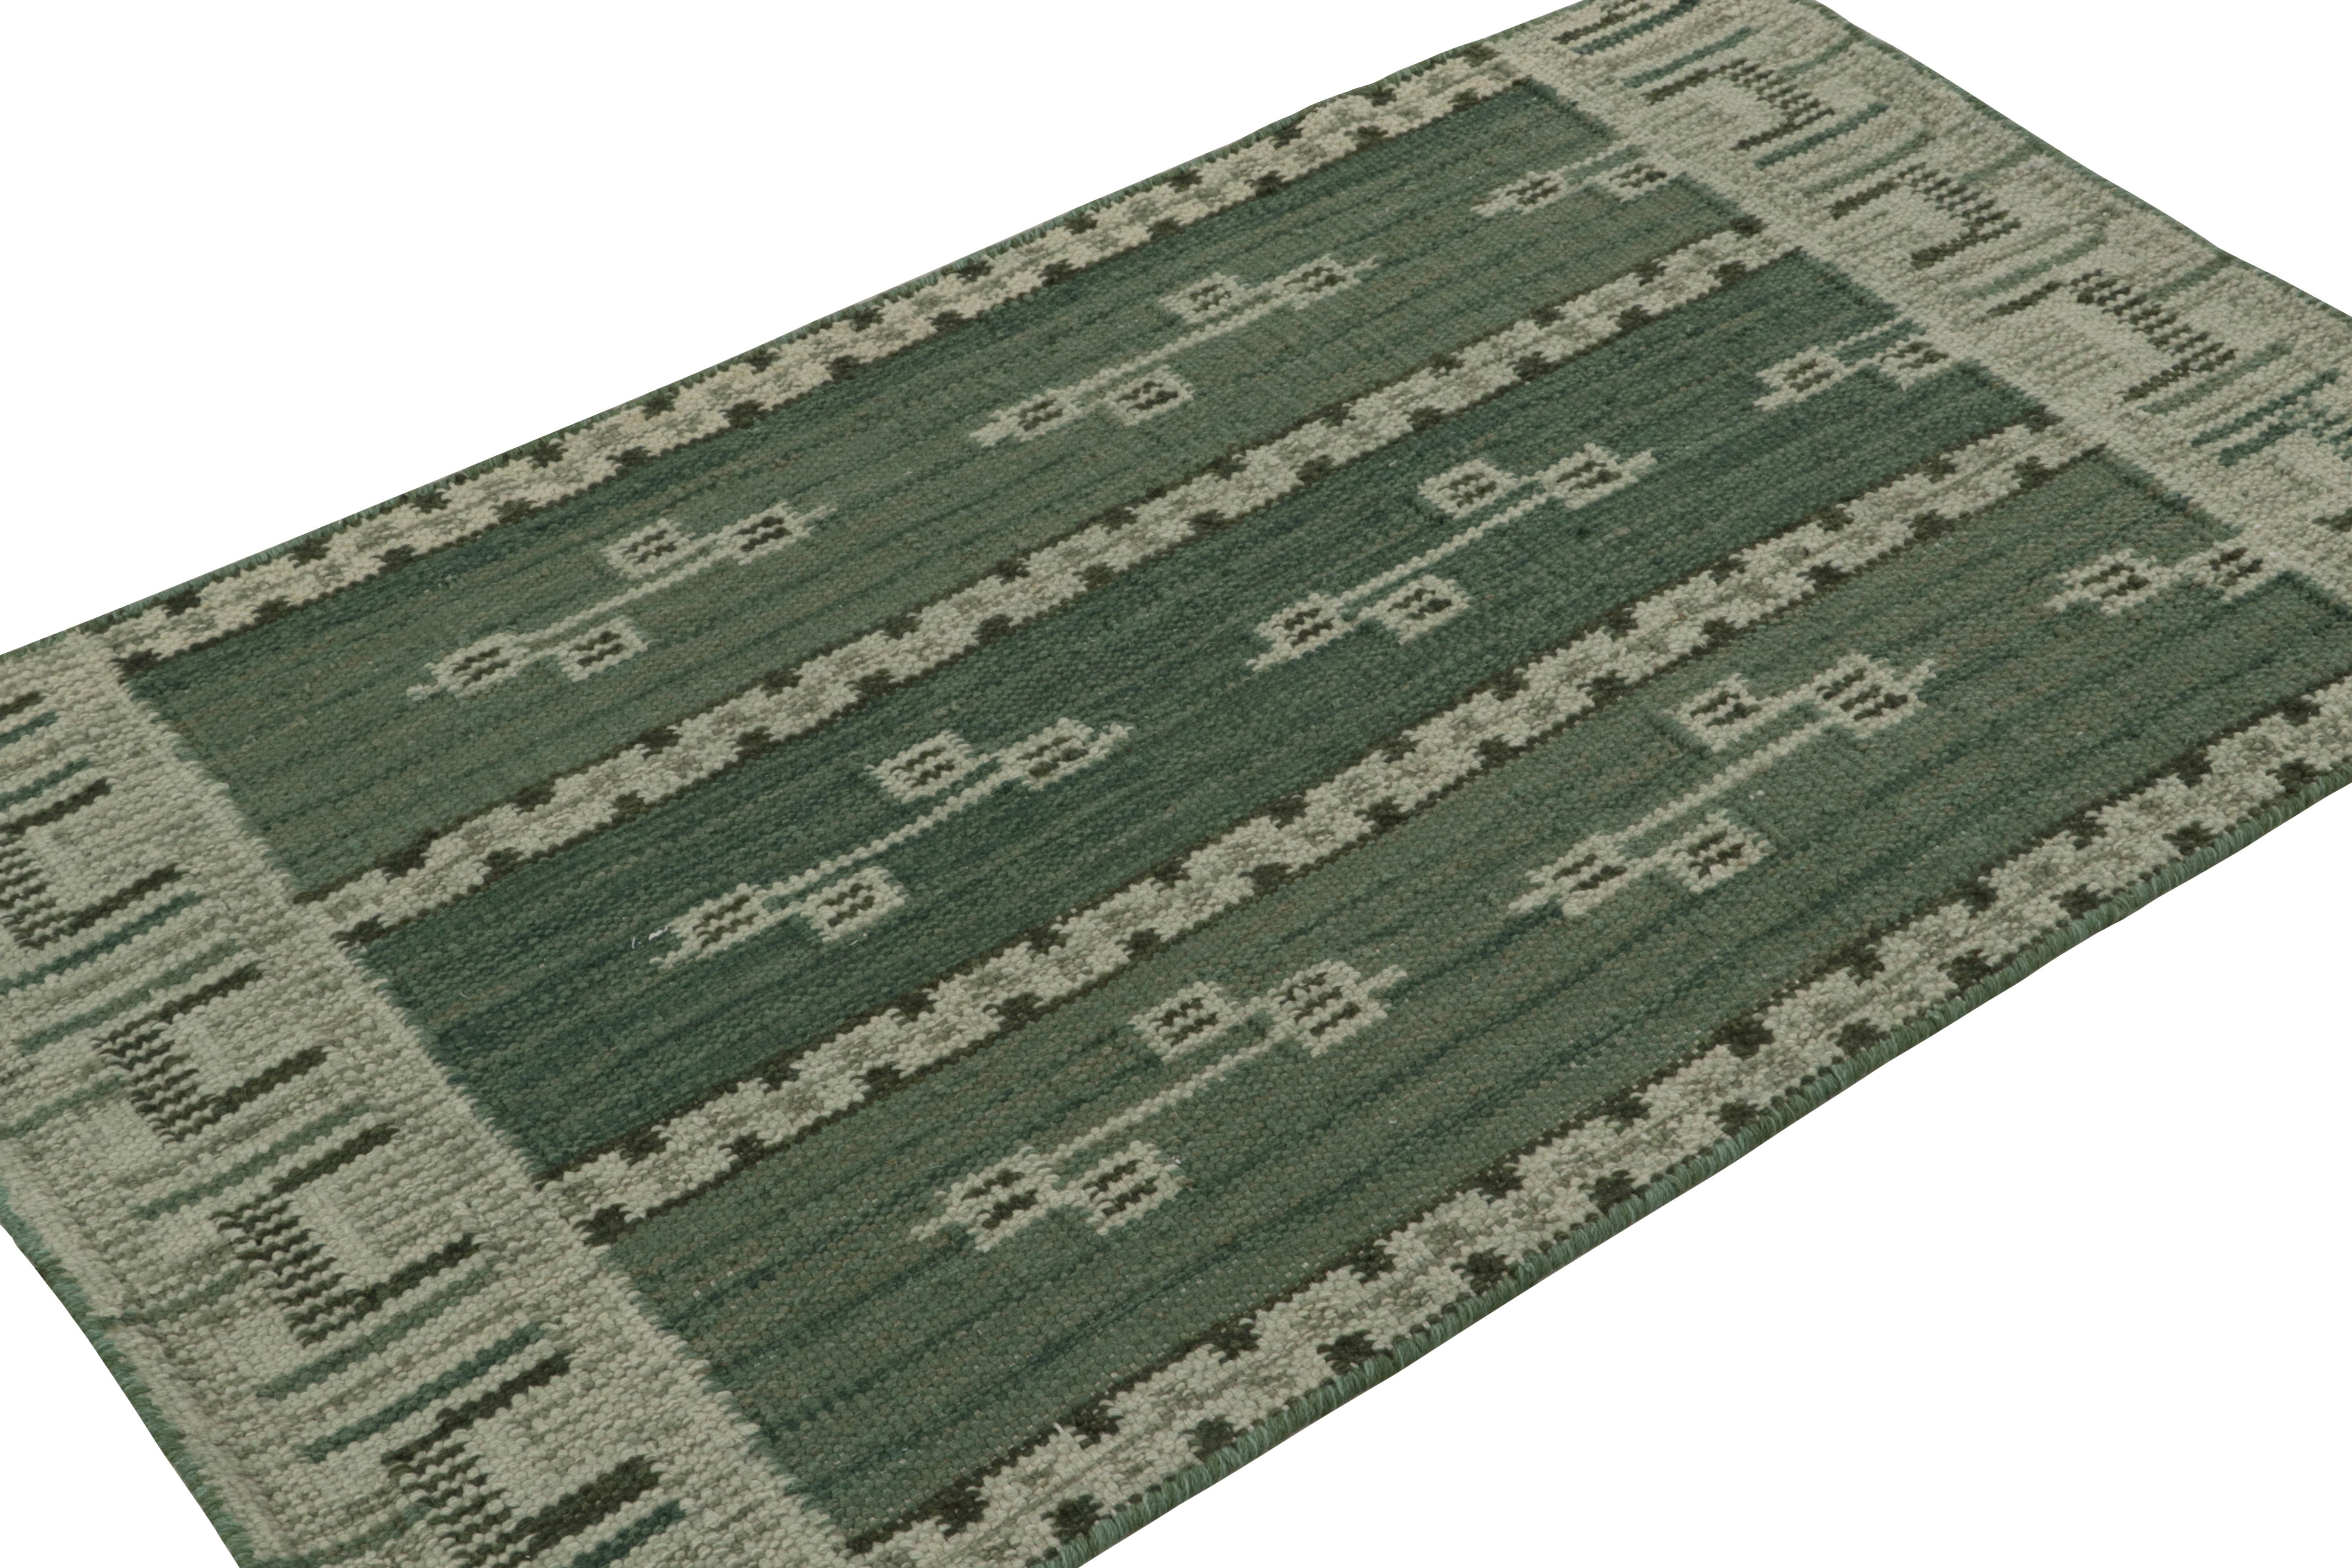 Ce tapis Kilim 3x5 est issu de la ligne flatweave de la collection de tapis scandinaves de Rug & Kilim. Tissé à la main en laine, coton et fils naturels, son design est une reprise moderne des tapis Rollakan et Rya dans le style déco suédois. 

Sur